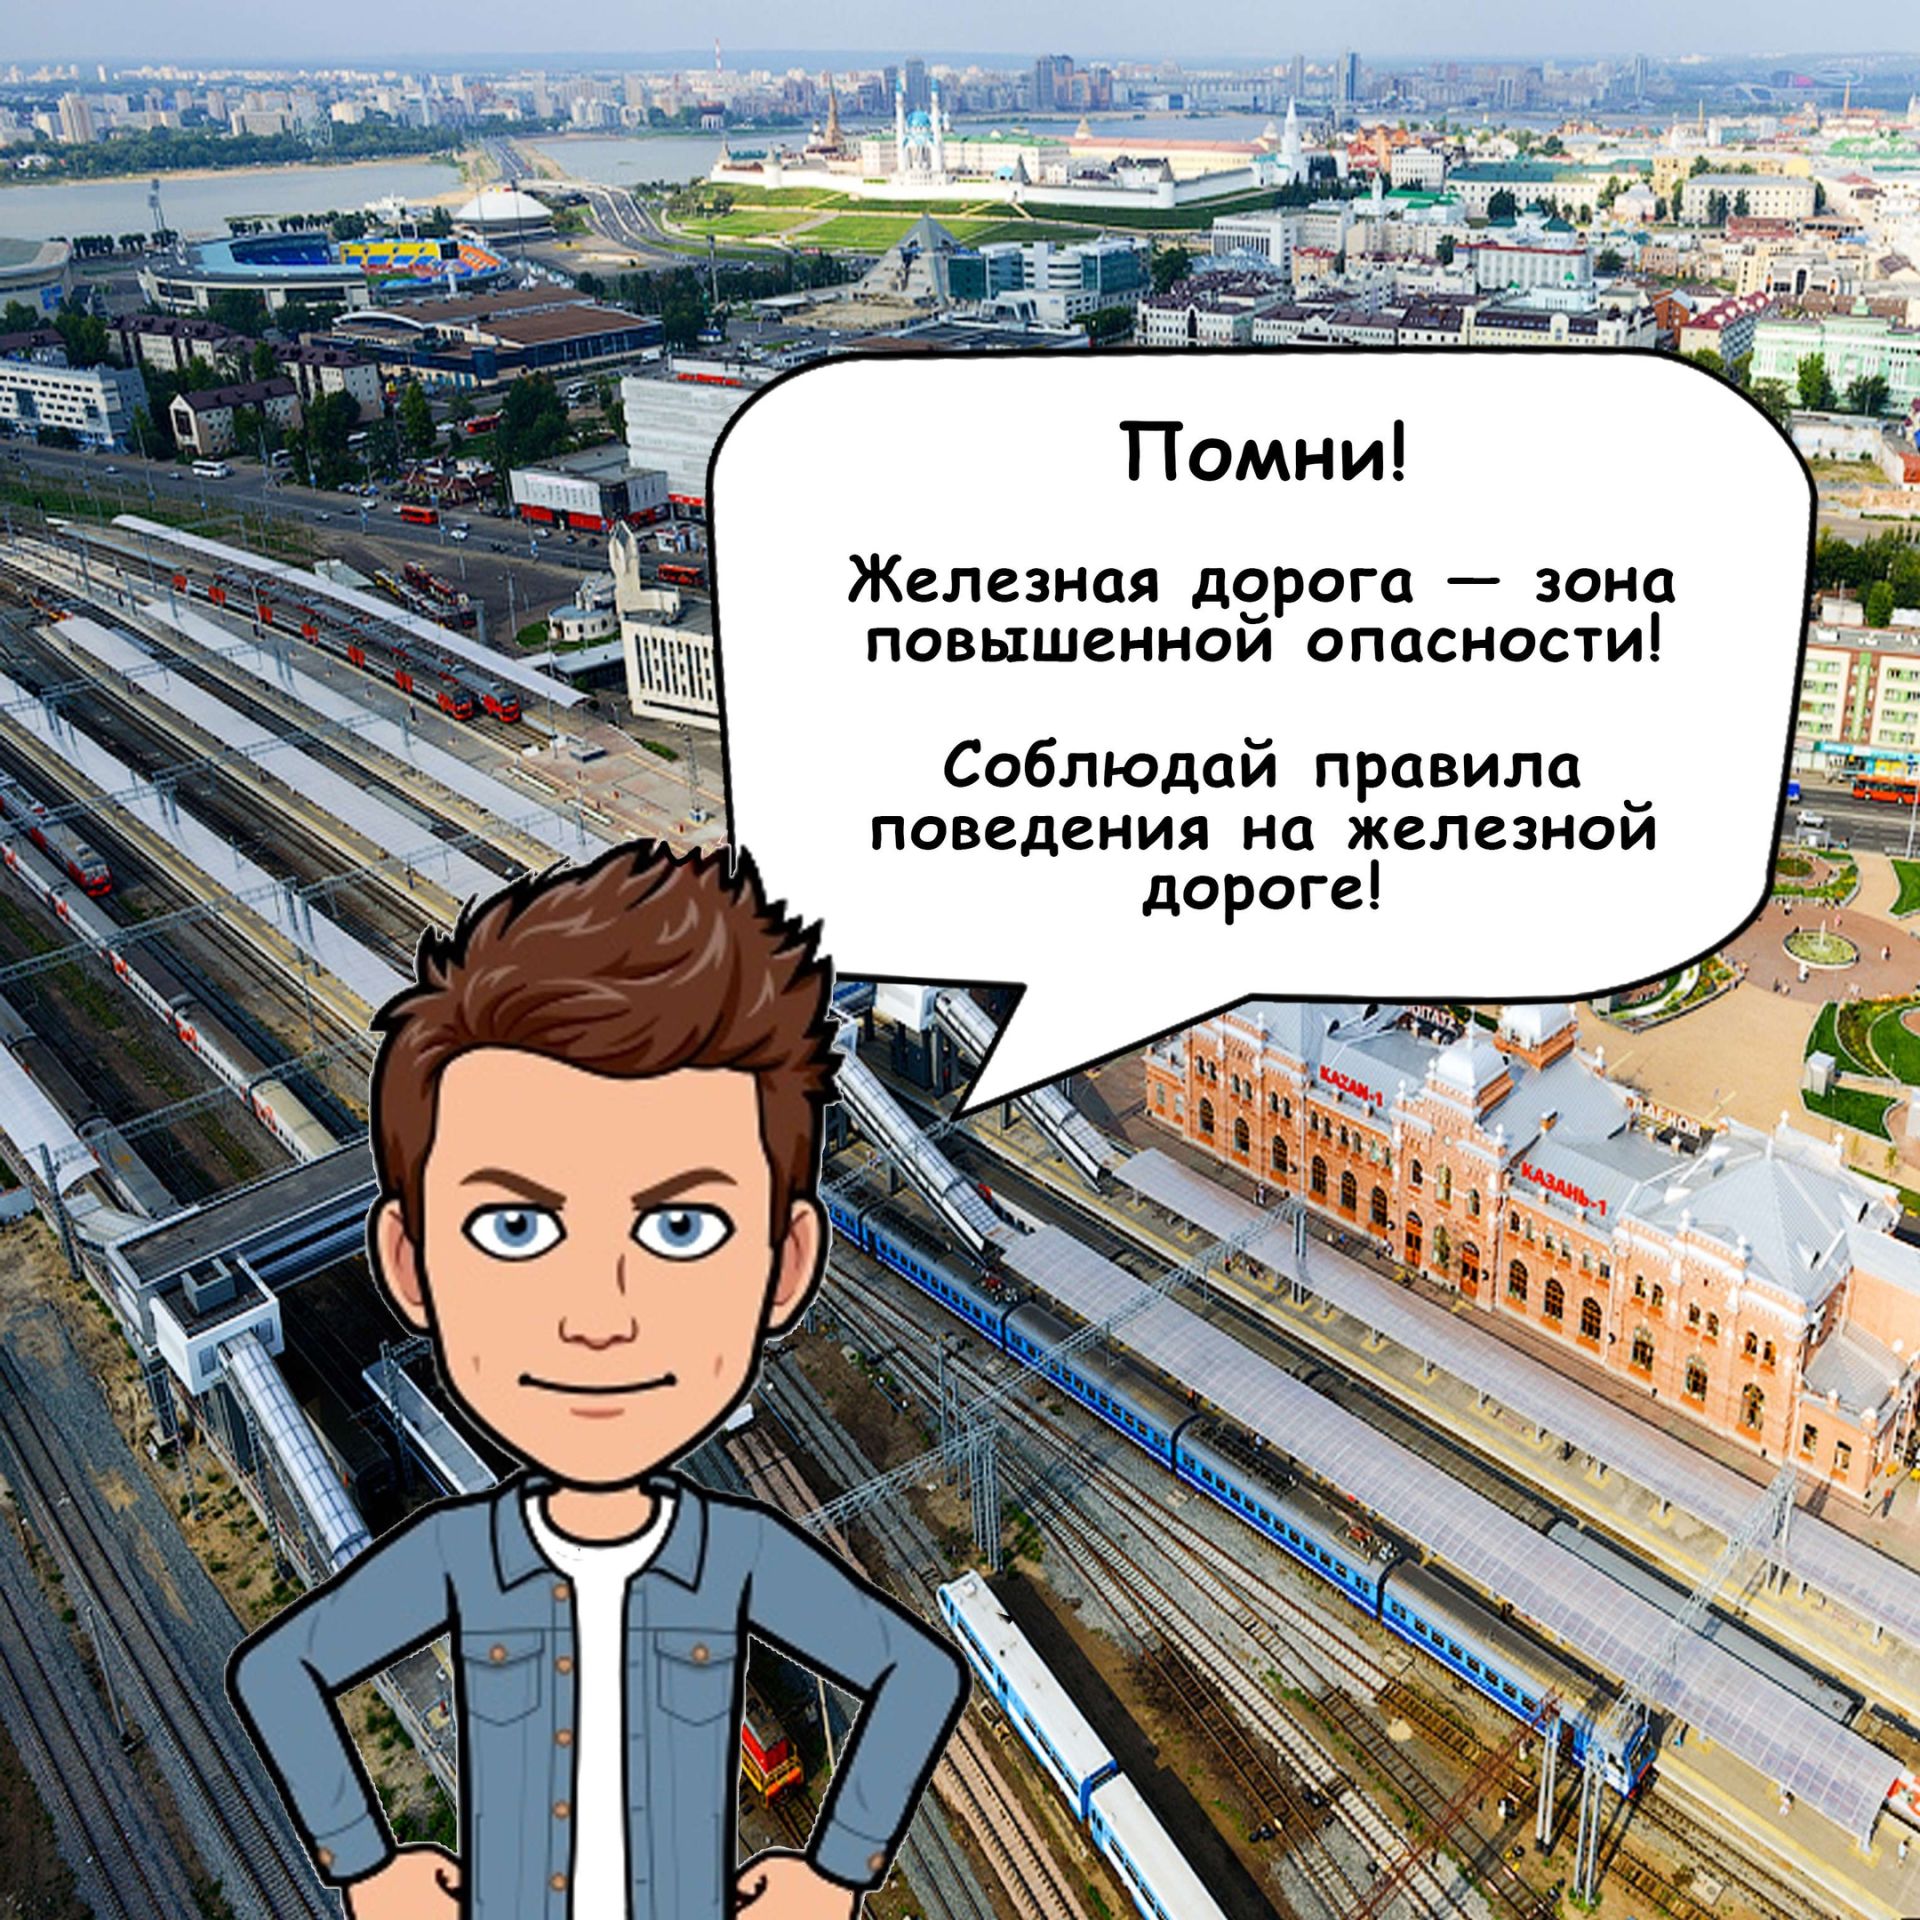 Алексеевцам напомнили о безопасном поведении на железной дороге